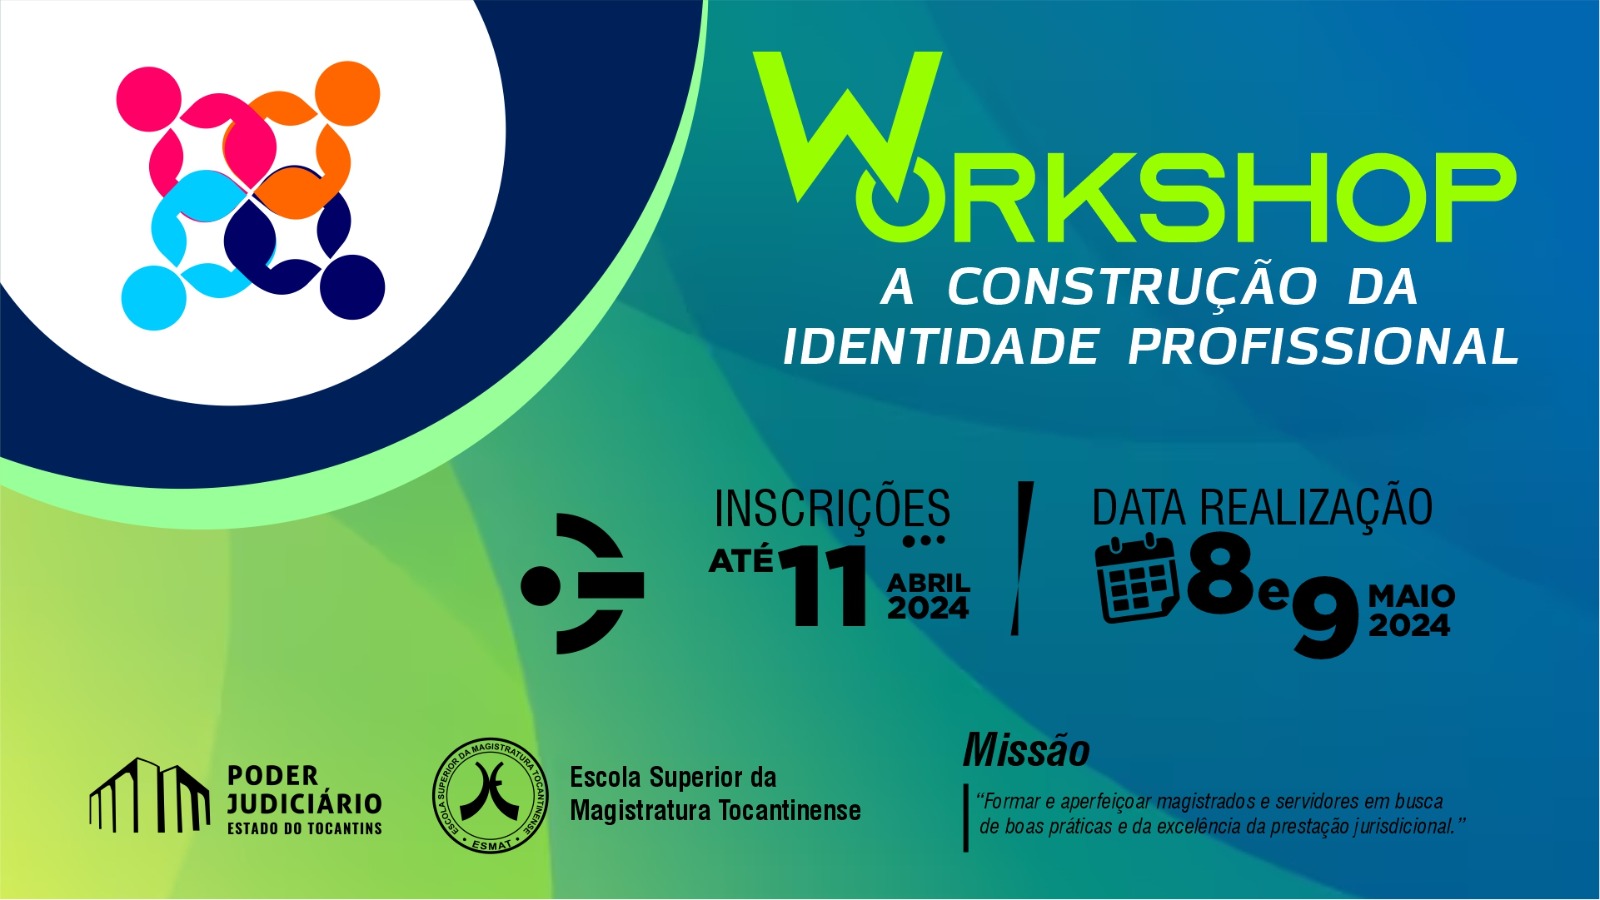 Workshop A construção da Identidade Profissional,